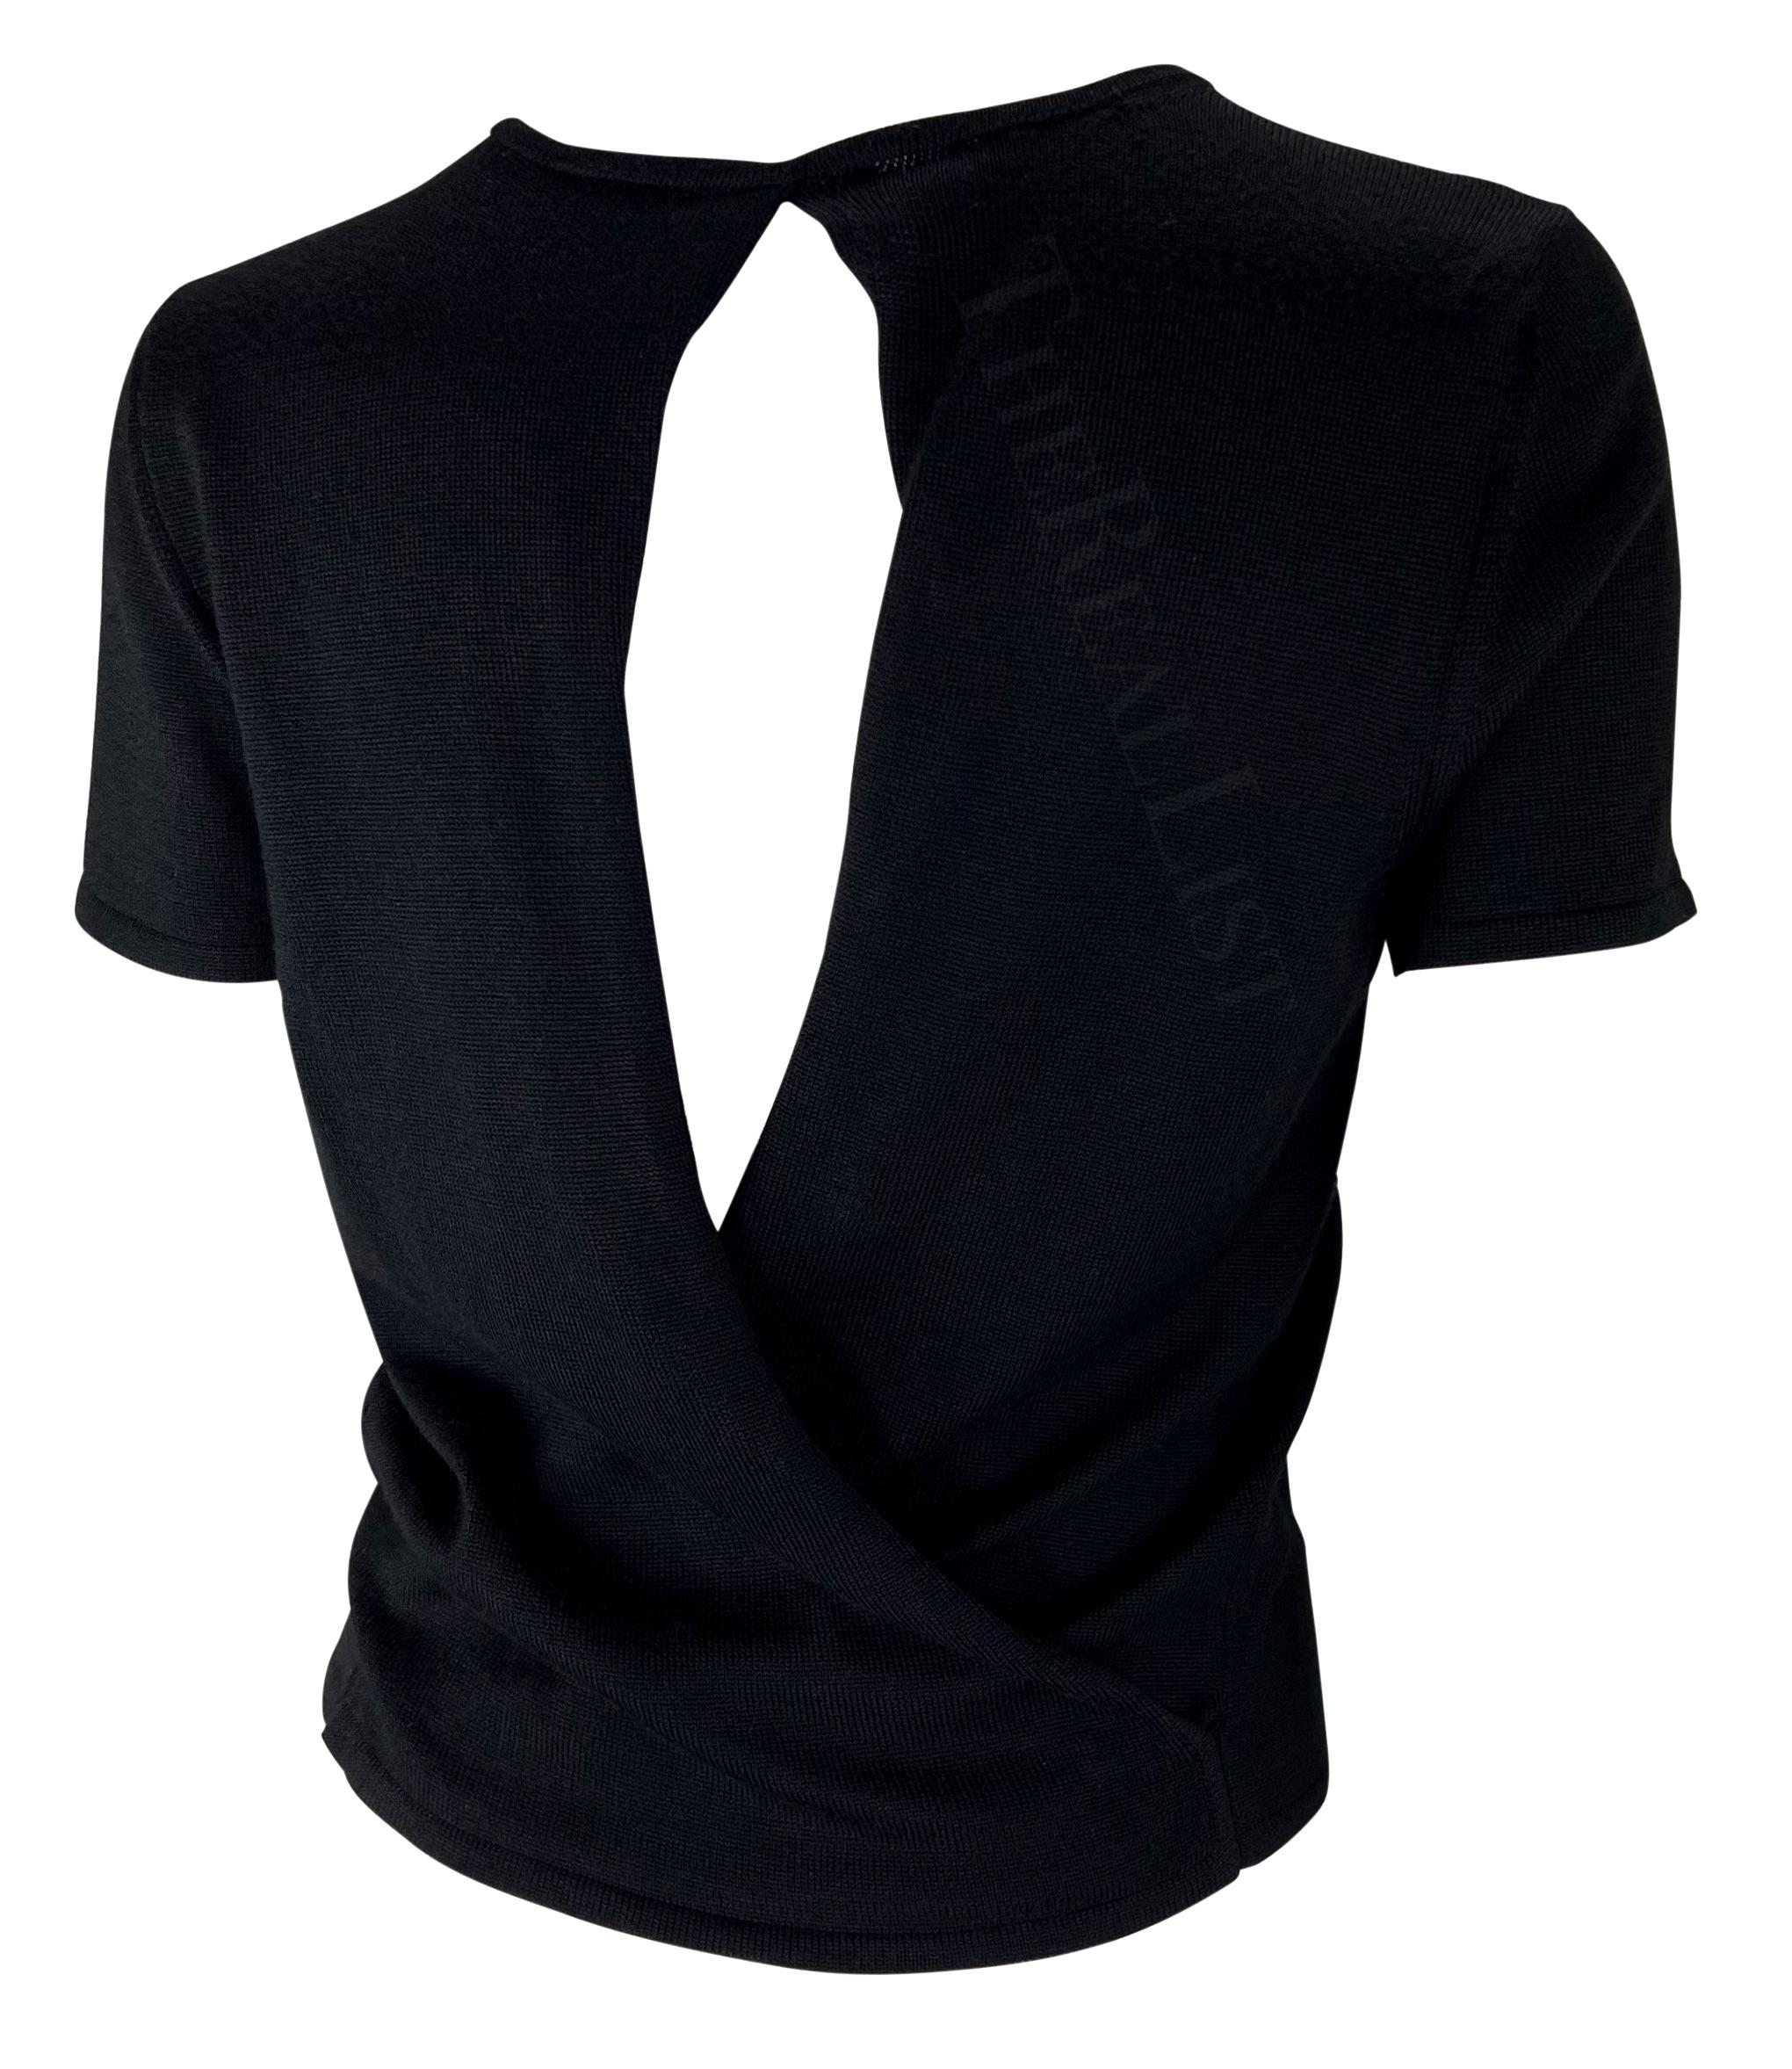 Wir präsentieren ein schwarzes Gucci-T-Shirt, entworfen von Tom Ford. Dieses Oberteil aus der Frühjahr/Sommer-Kollektion 1997 ist mit perforierten Details versehen und wird am Rücken gewickelt, wodurch eine Öse entsteht, die den Rücken freilegt.